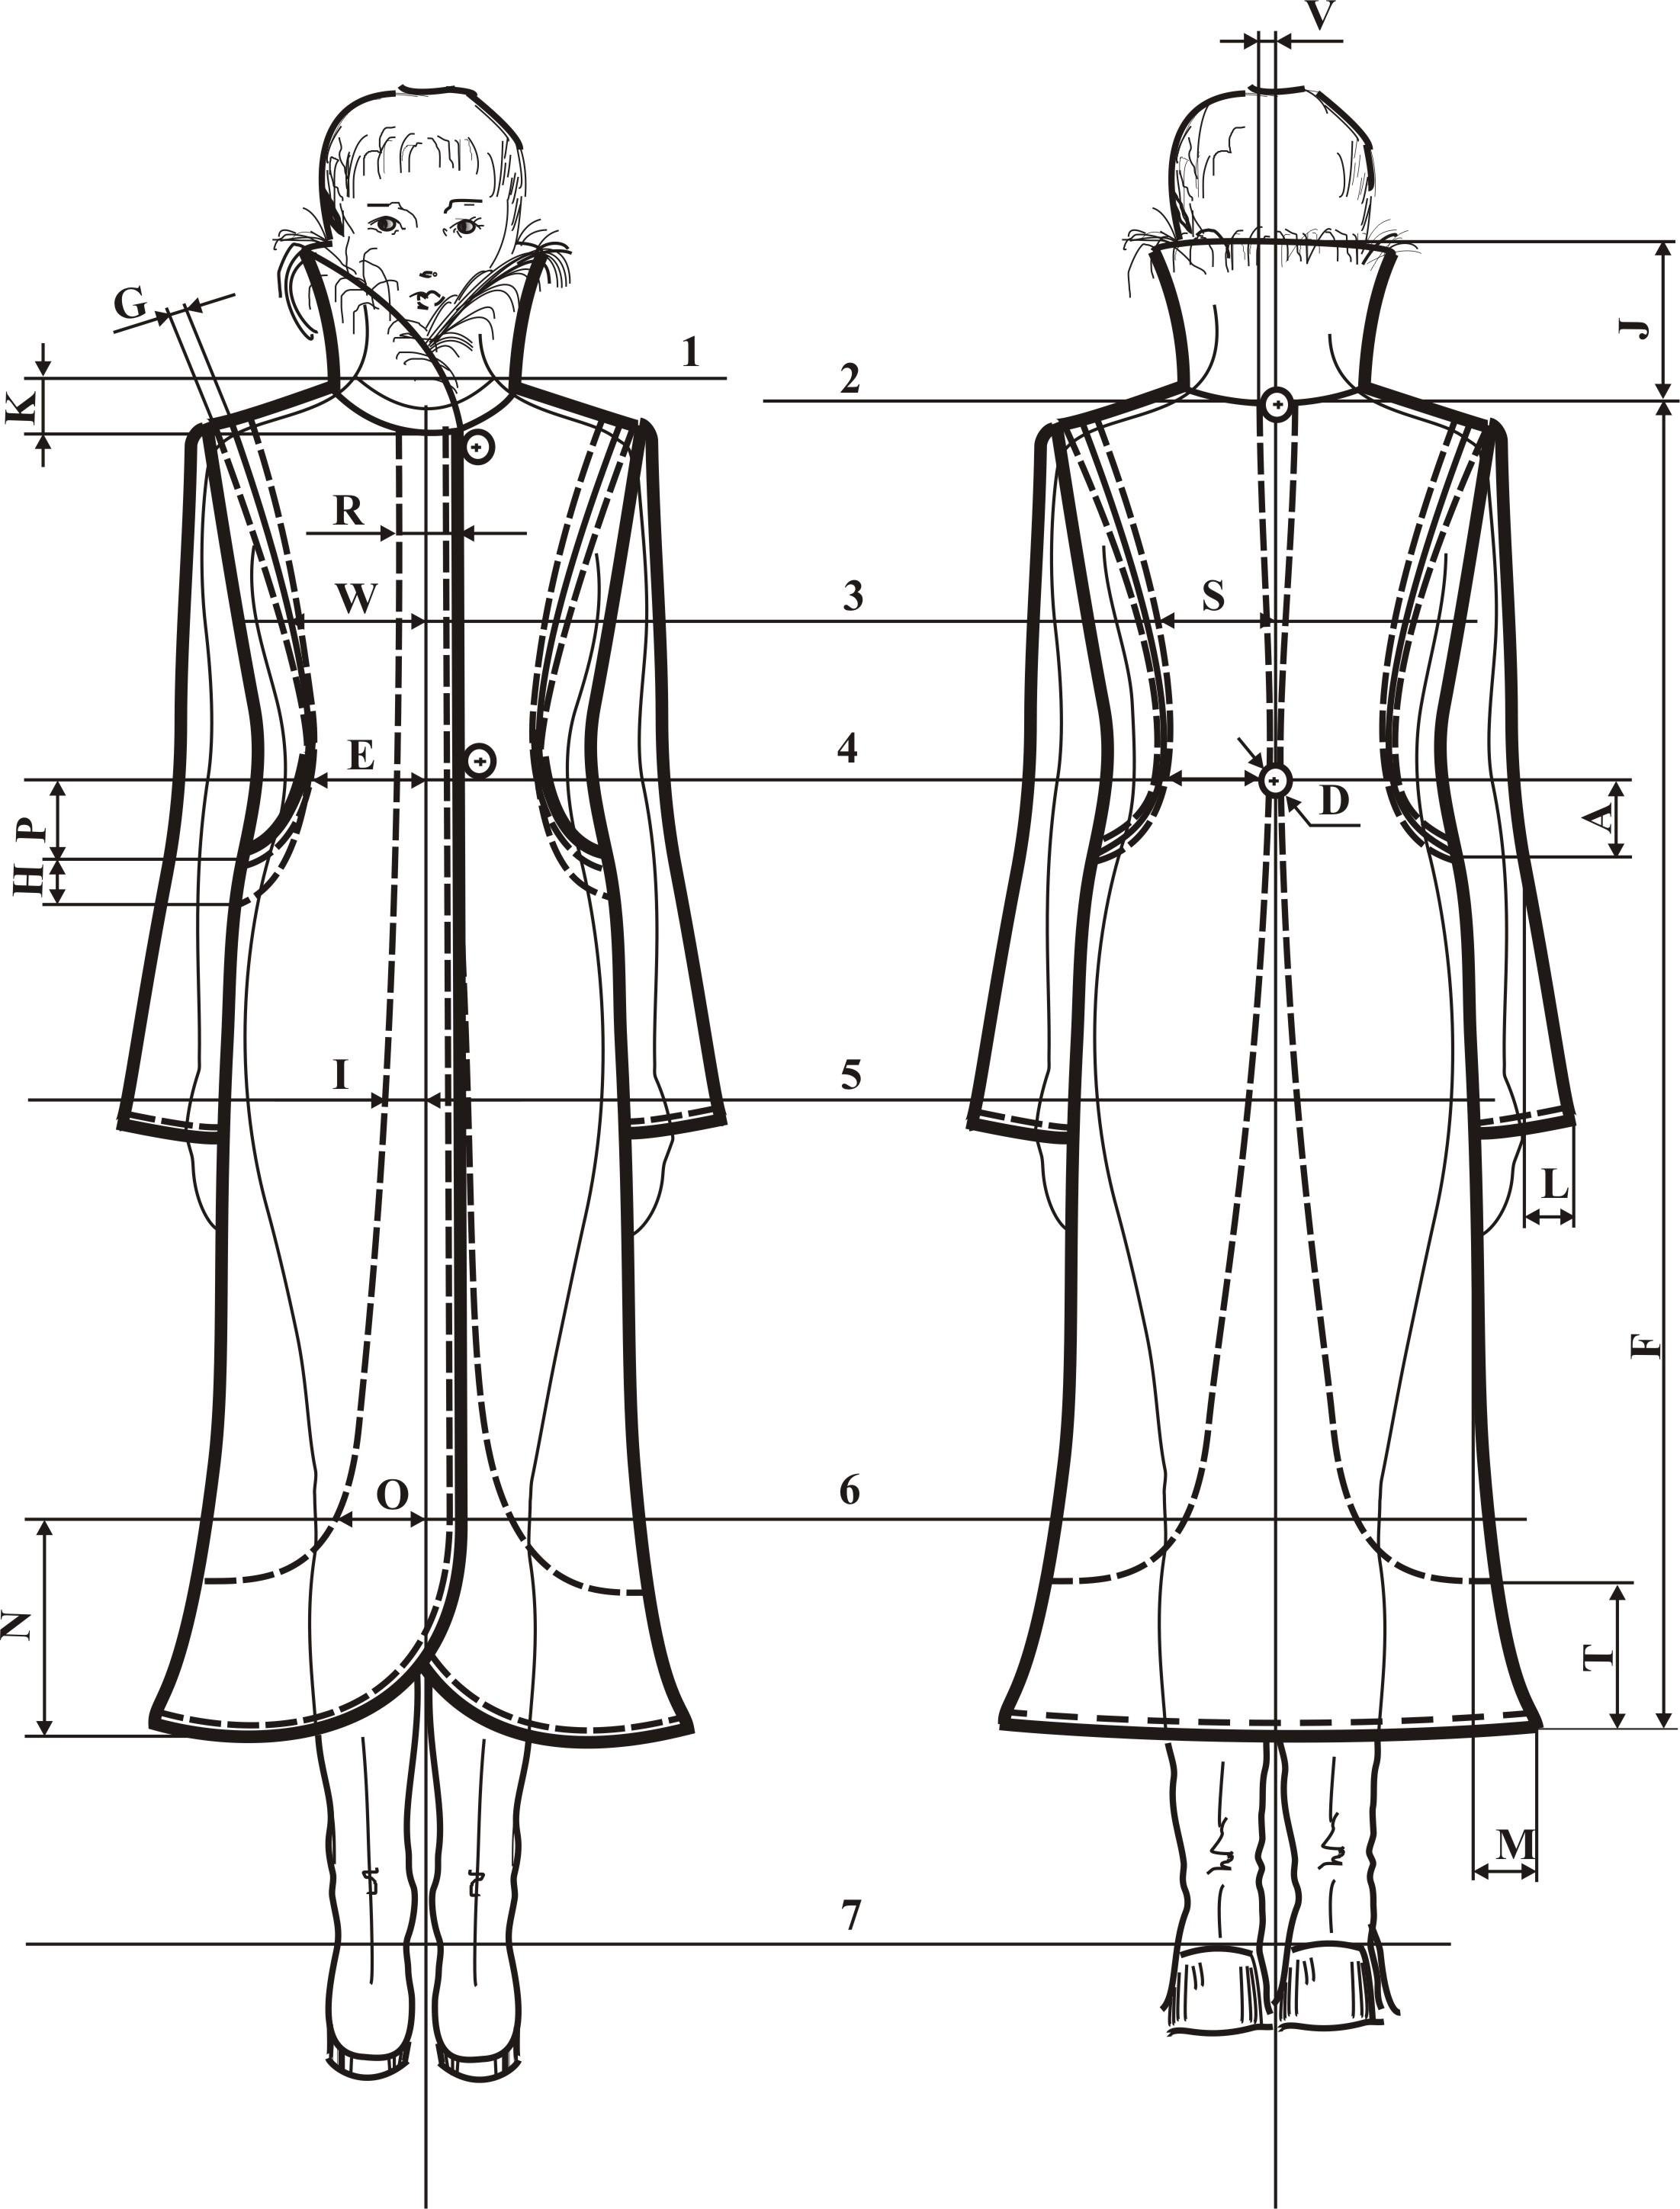 Технический эскиз женского платья